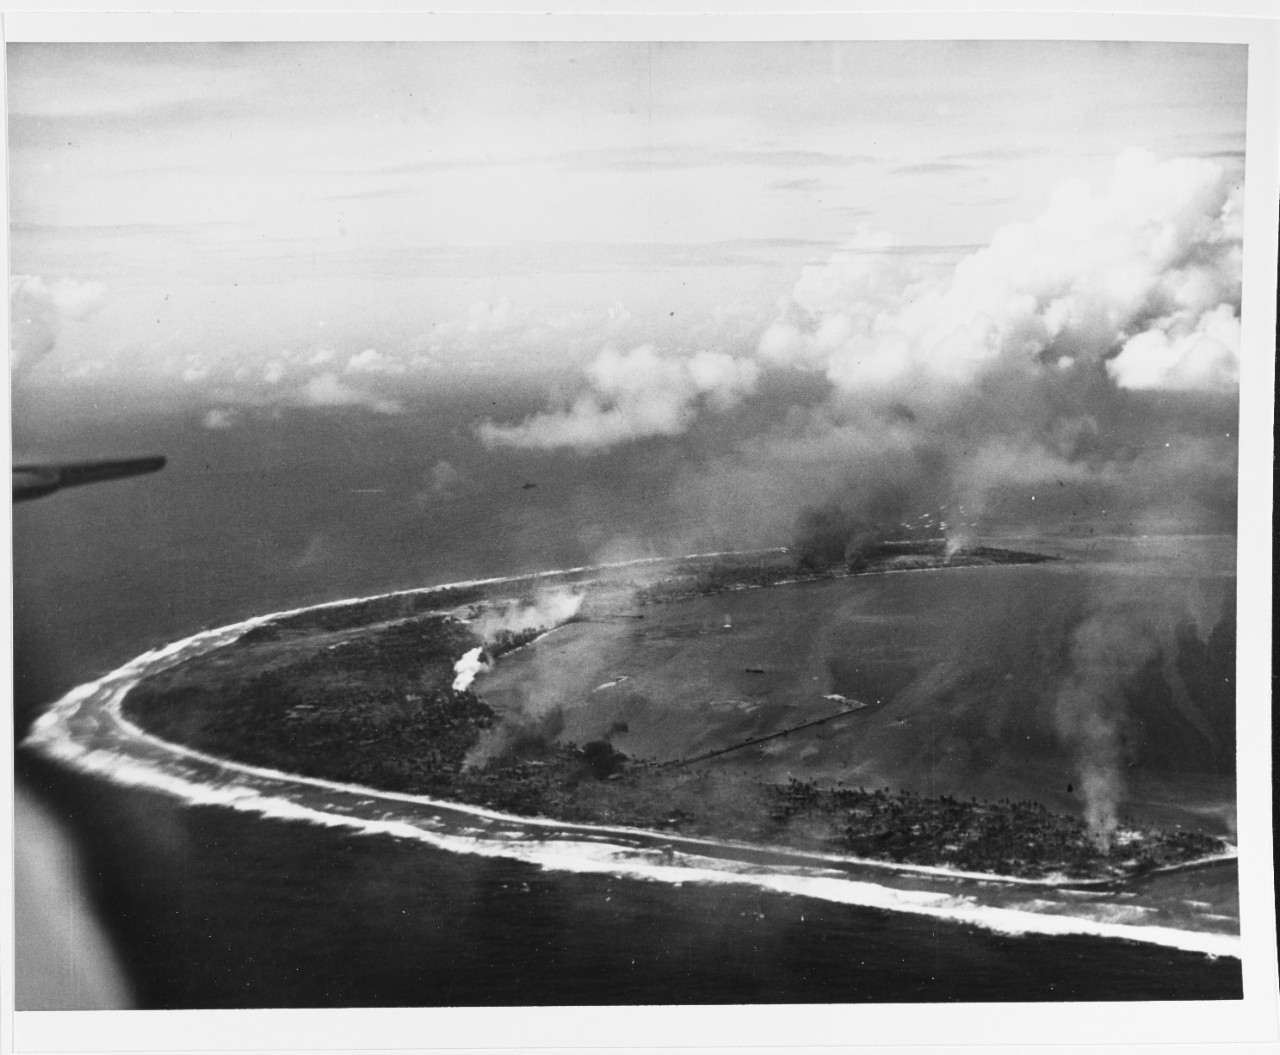 Kwajalein operation, January-February 1944